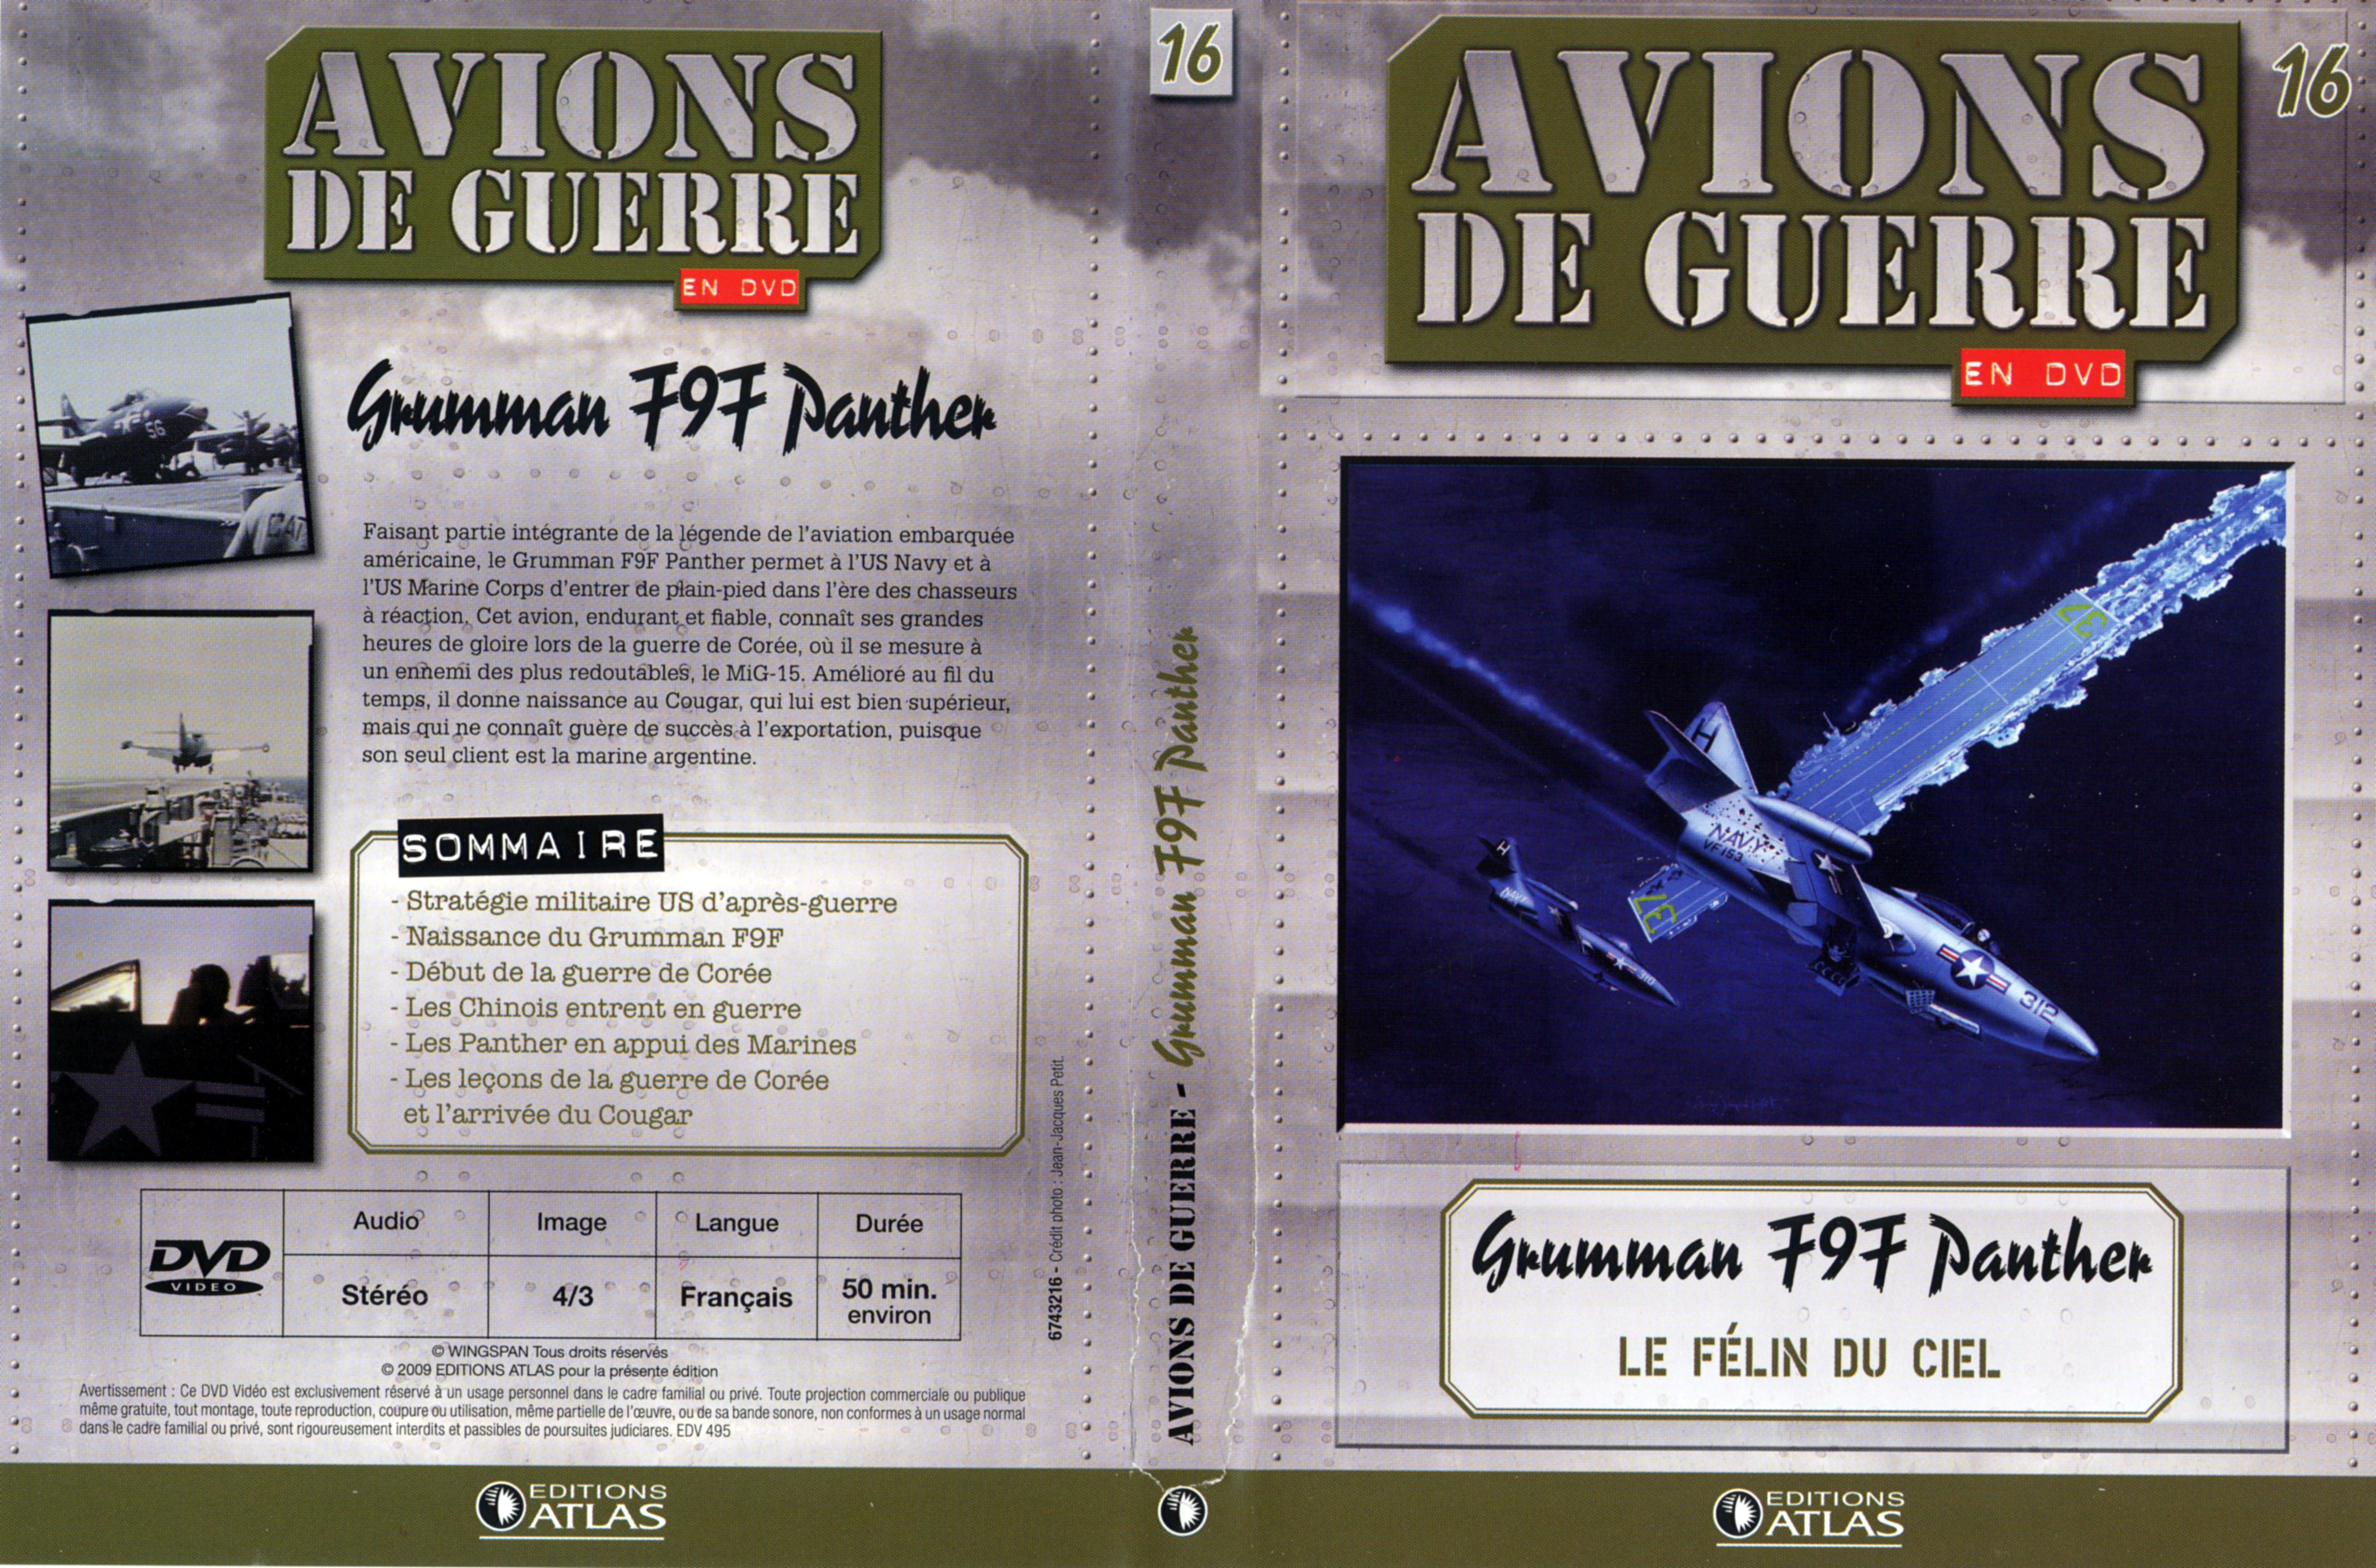 Jaquette DVD Avions de guerre en DVD vol 16